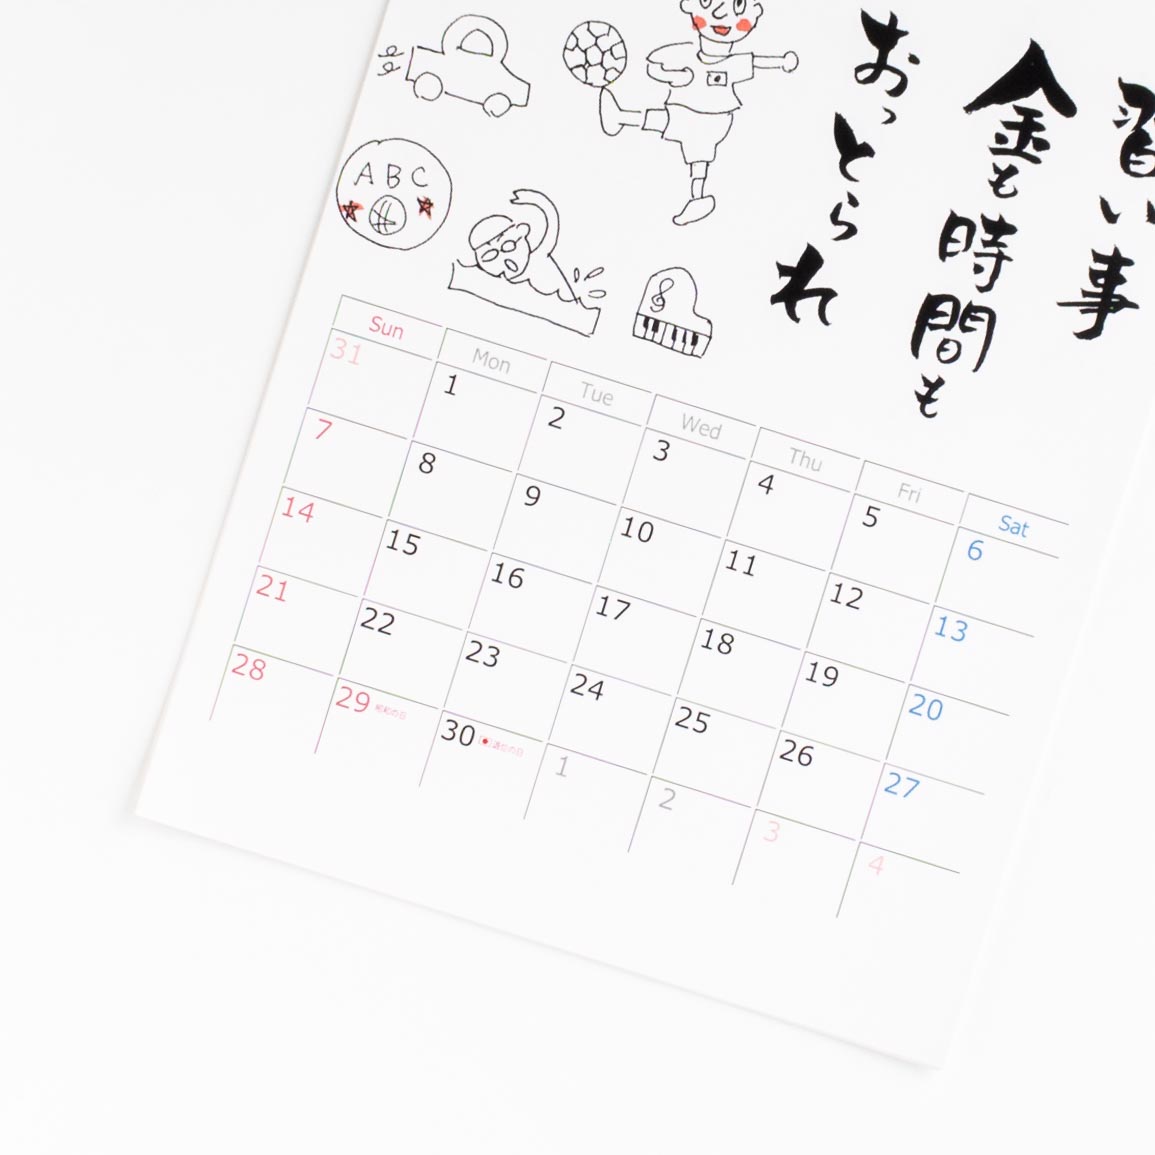 「中村  あゆみ 様」製作のオリジナルカレンダー ギャラリー写真2